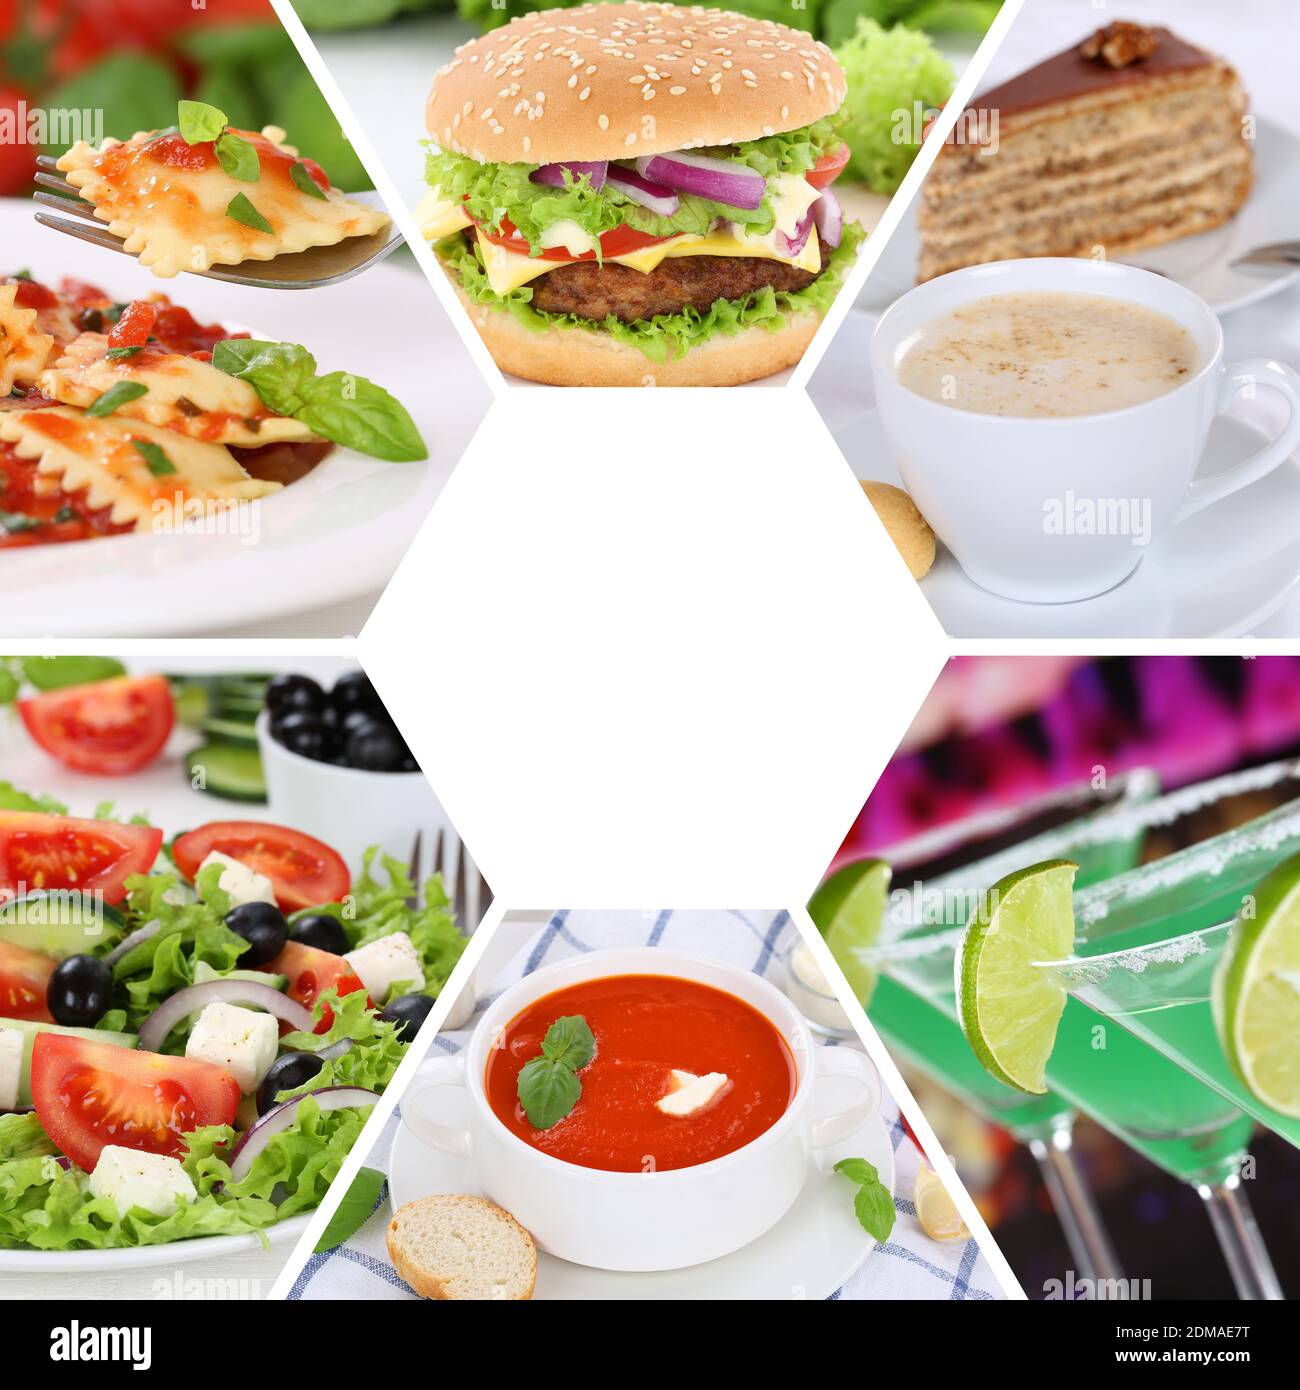 Sammlung Collage Essen und trinken Gerichte Restaurant Karte Set Stock Photo